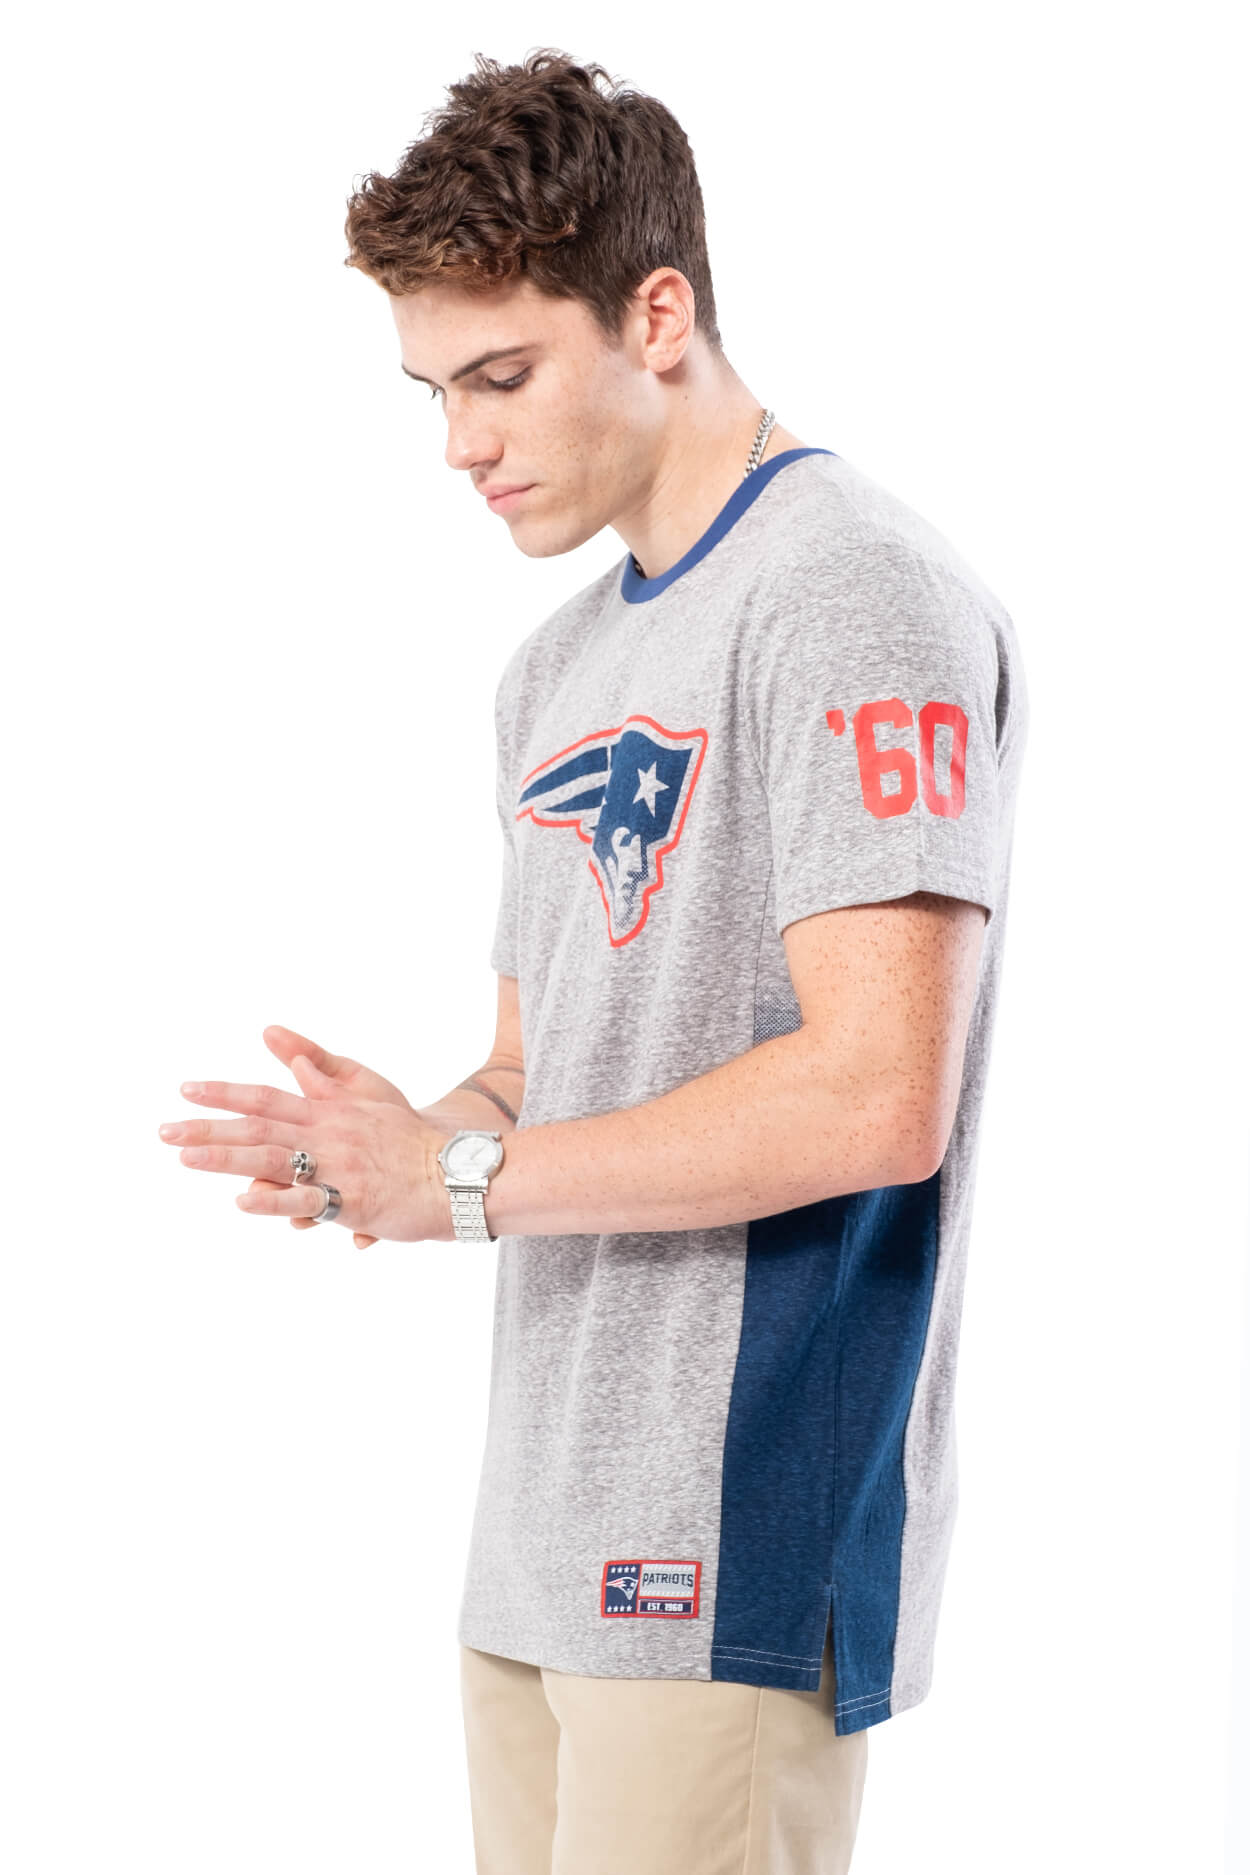 NFL New England Patriots Men's Vintage Ringer Short Sleeve Tee|New England Patriots